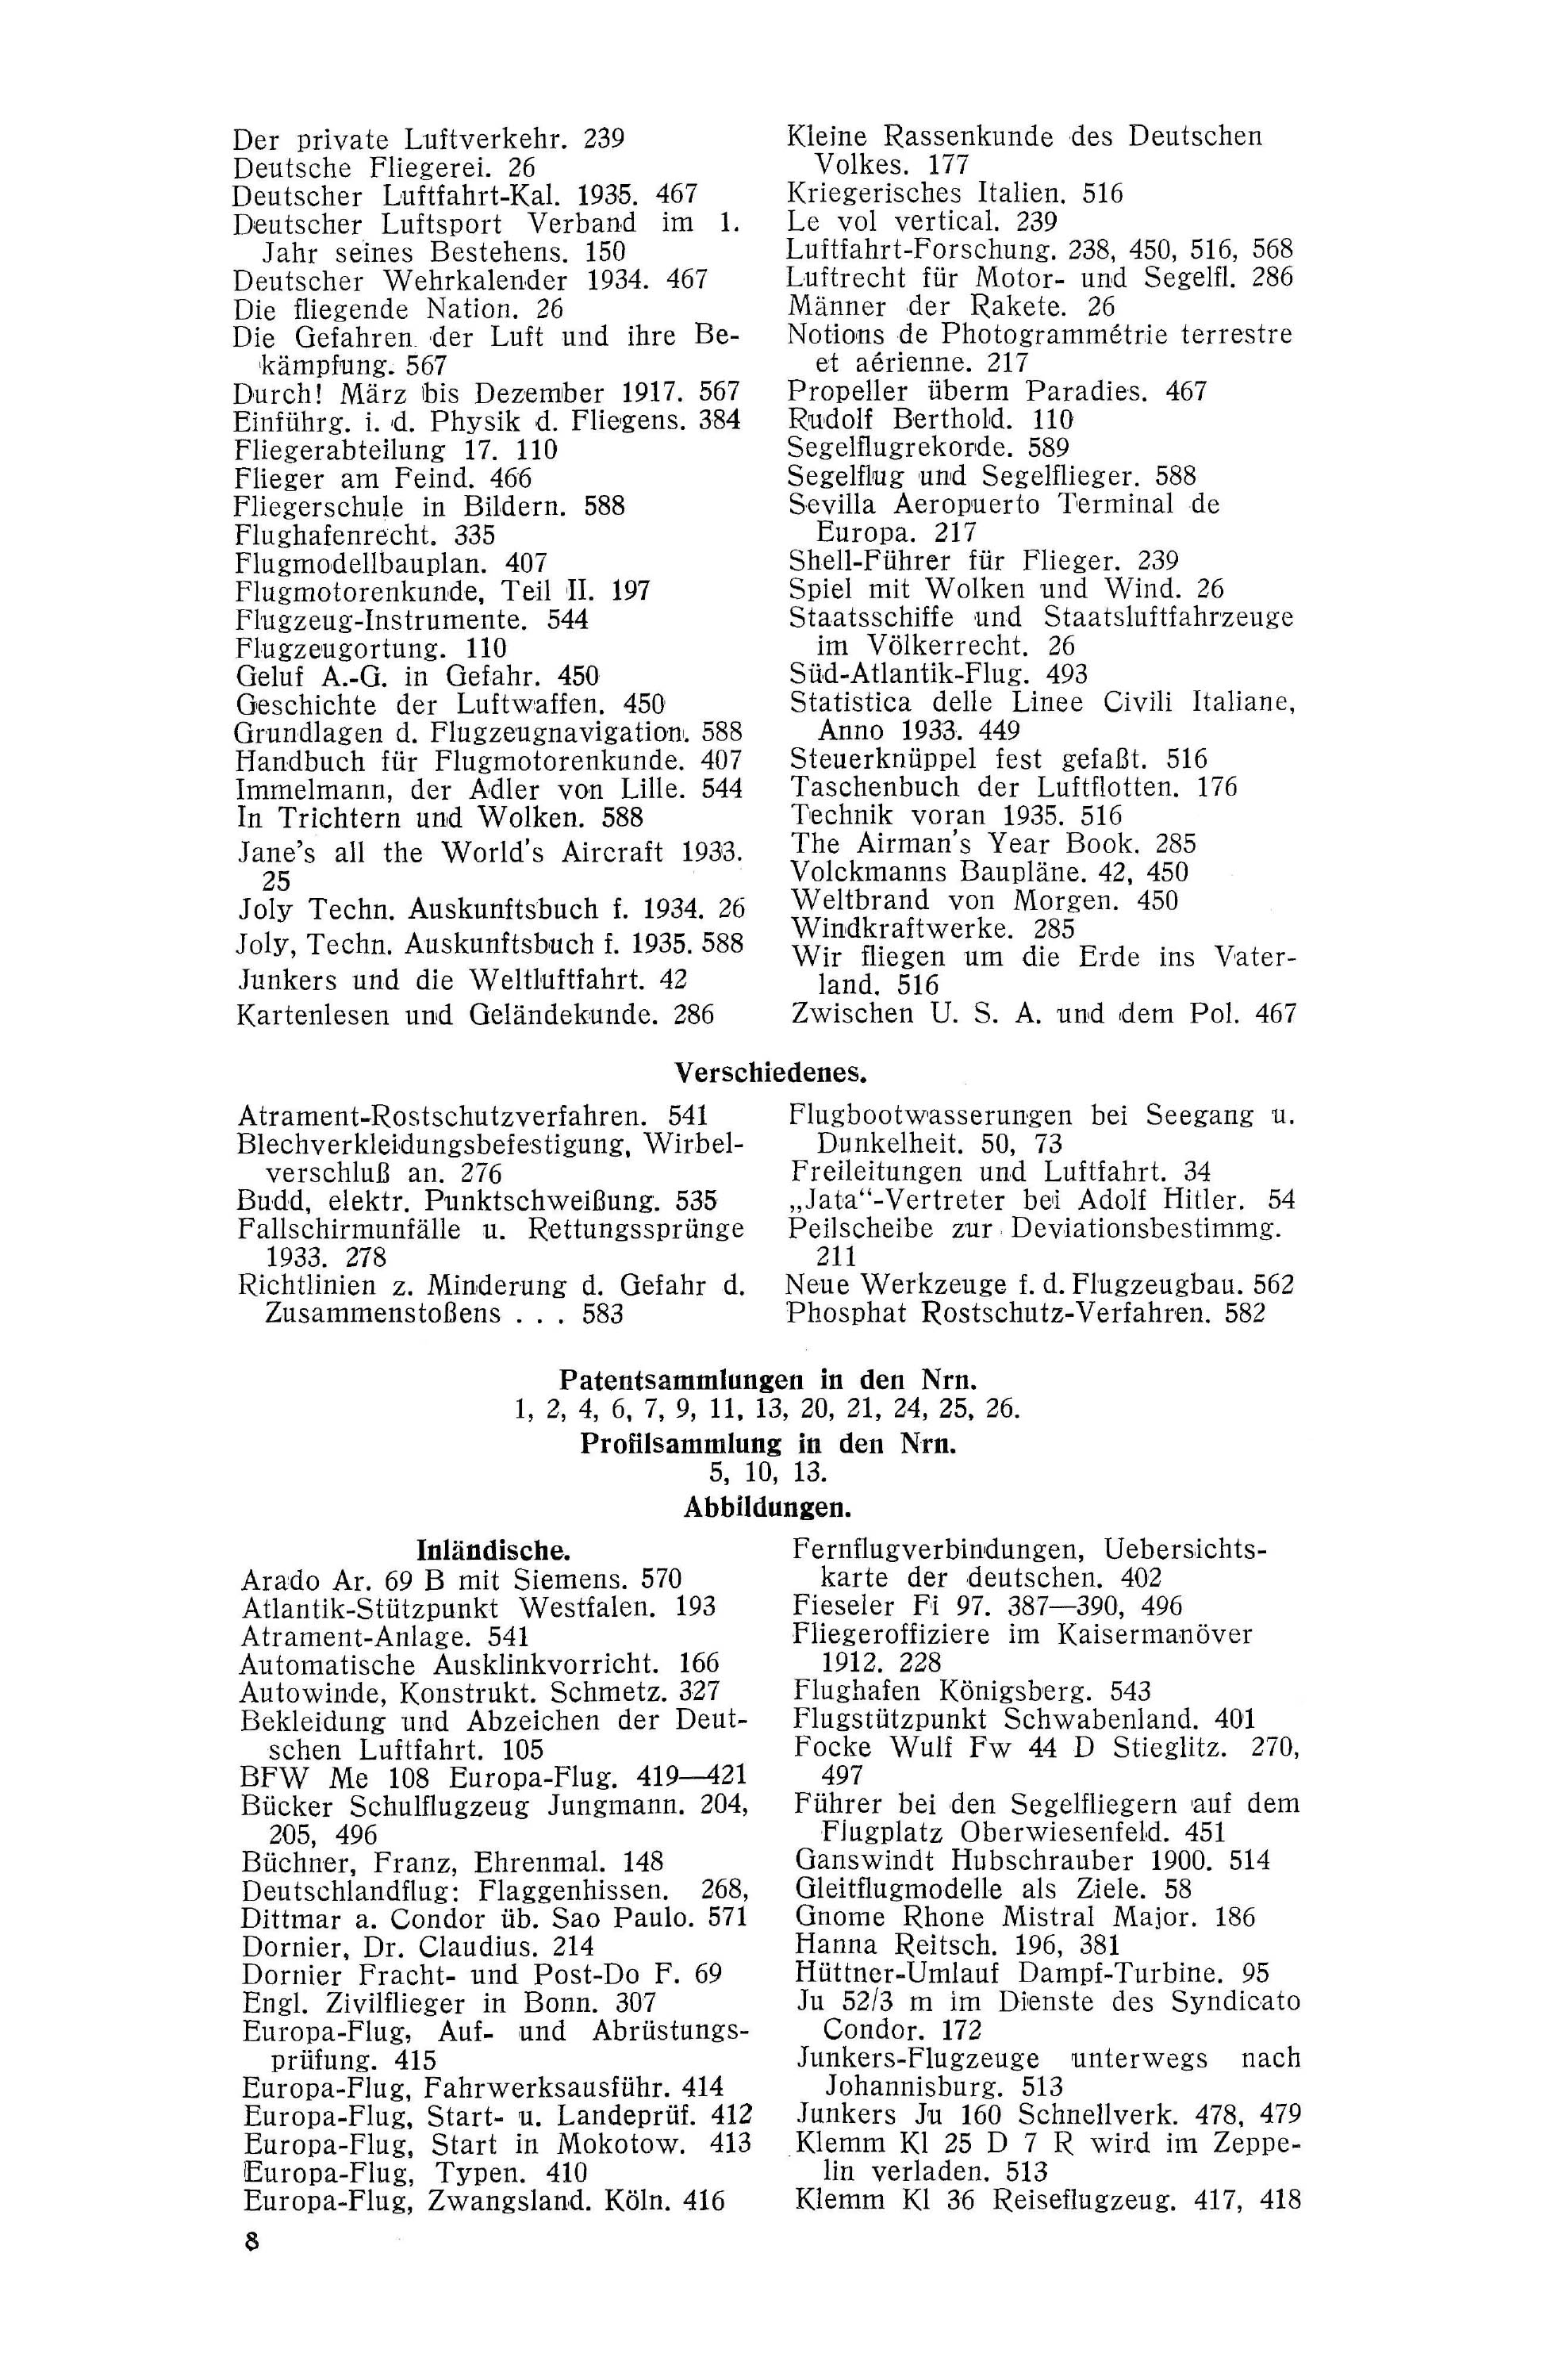 Sachregister und Inhaltsverzeichnis der Zeitschrift Flugsport 1934